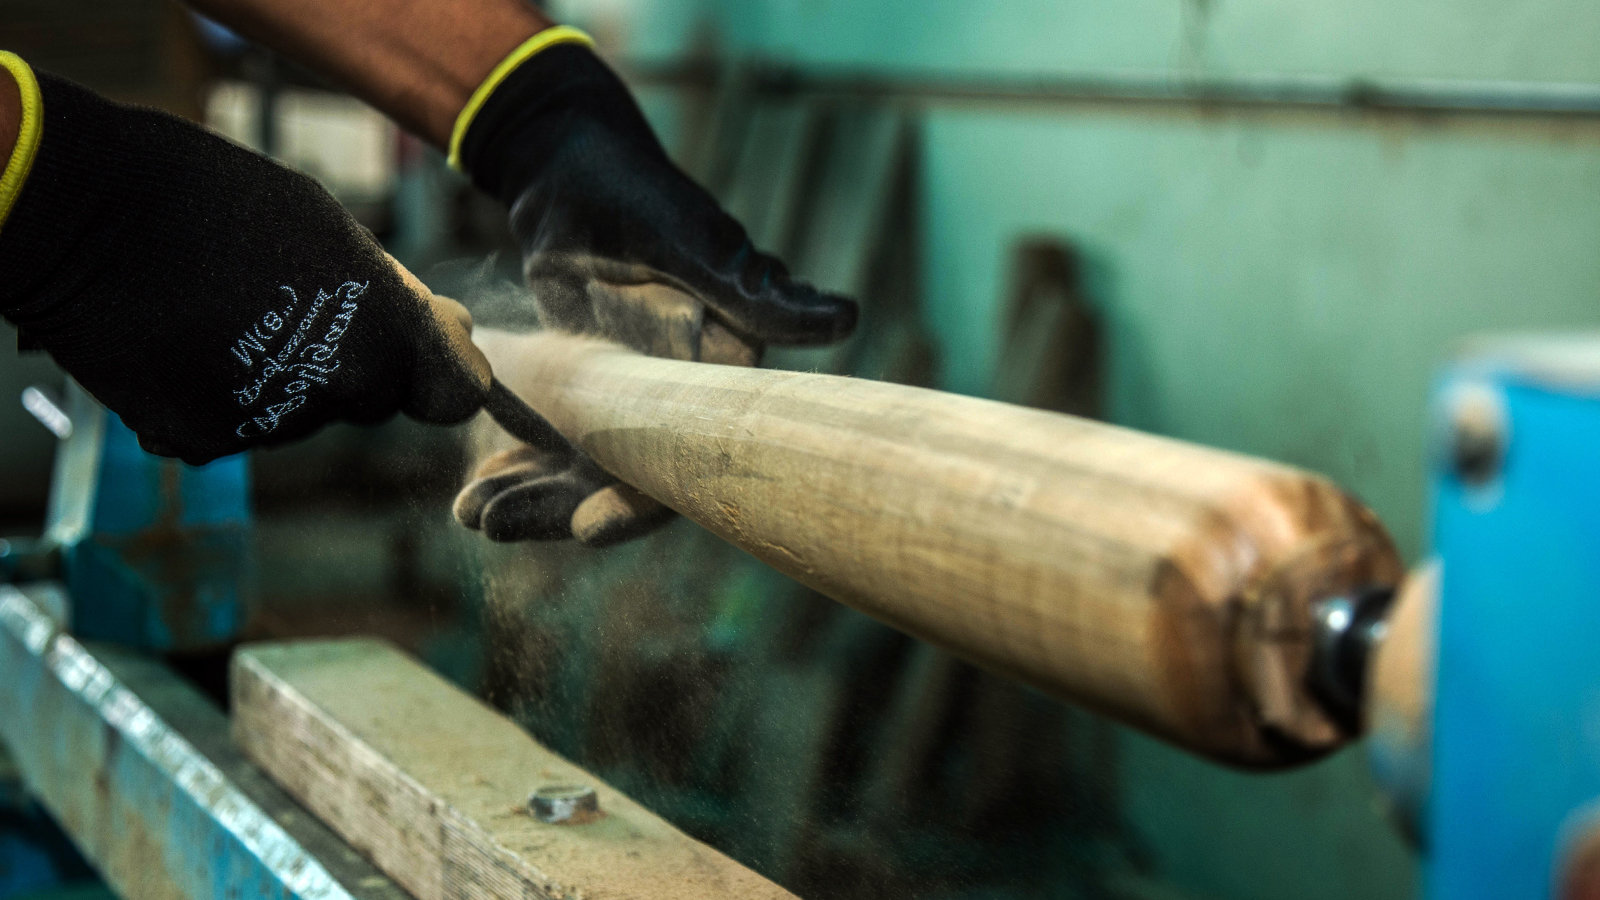 REPÚBLICA DOMINICANA: Bate de Bambú. Durísimo y dominicano